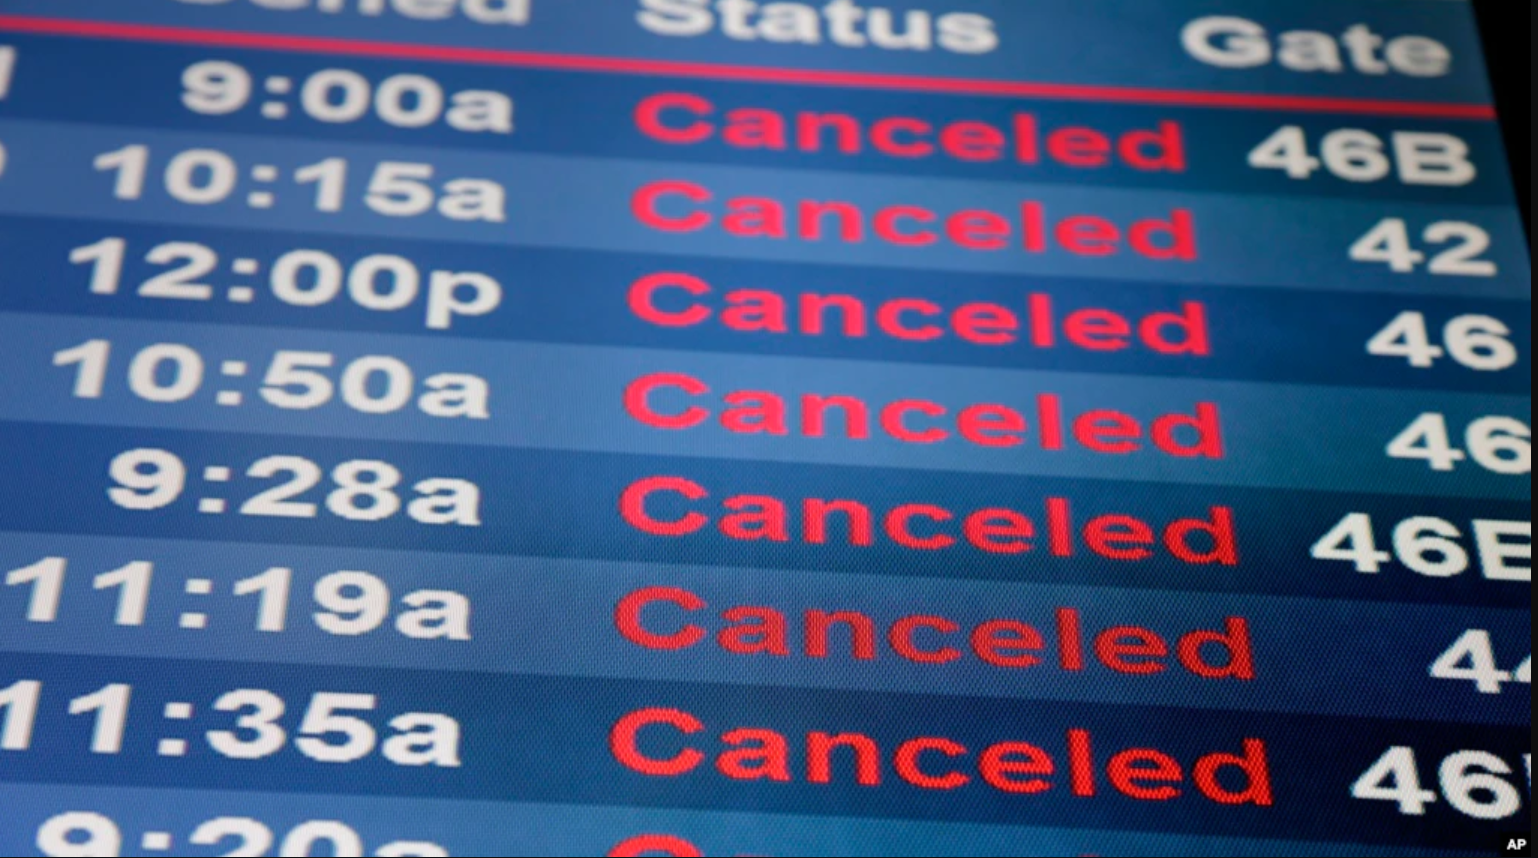 EEUU exige a la aerolínea Southwest compensaciones y reembolsos (Video)